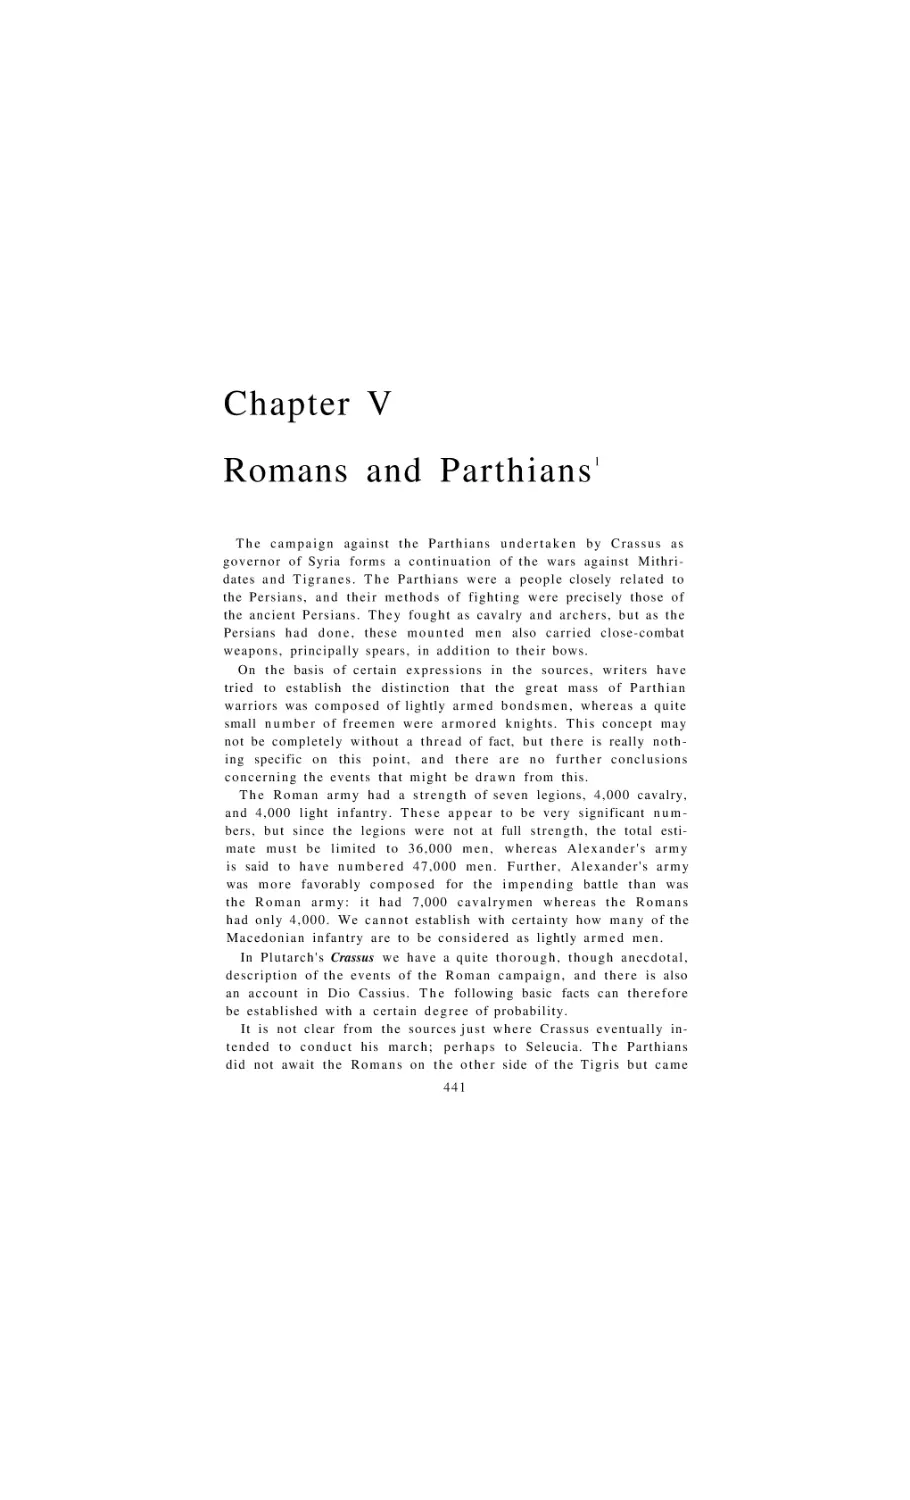 Romans and Parthians